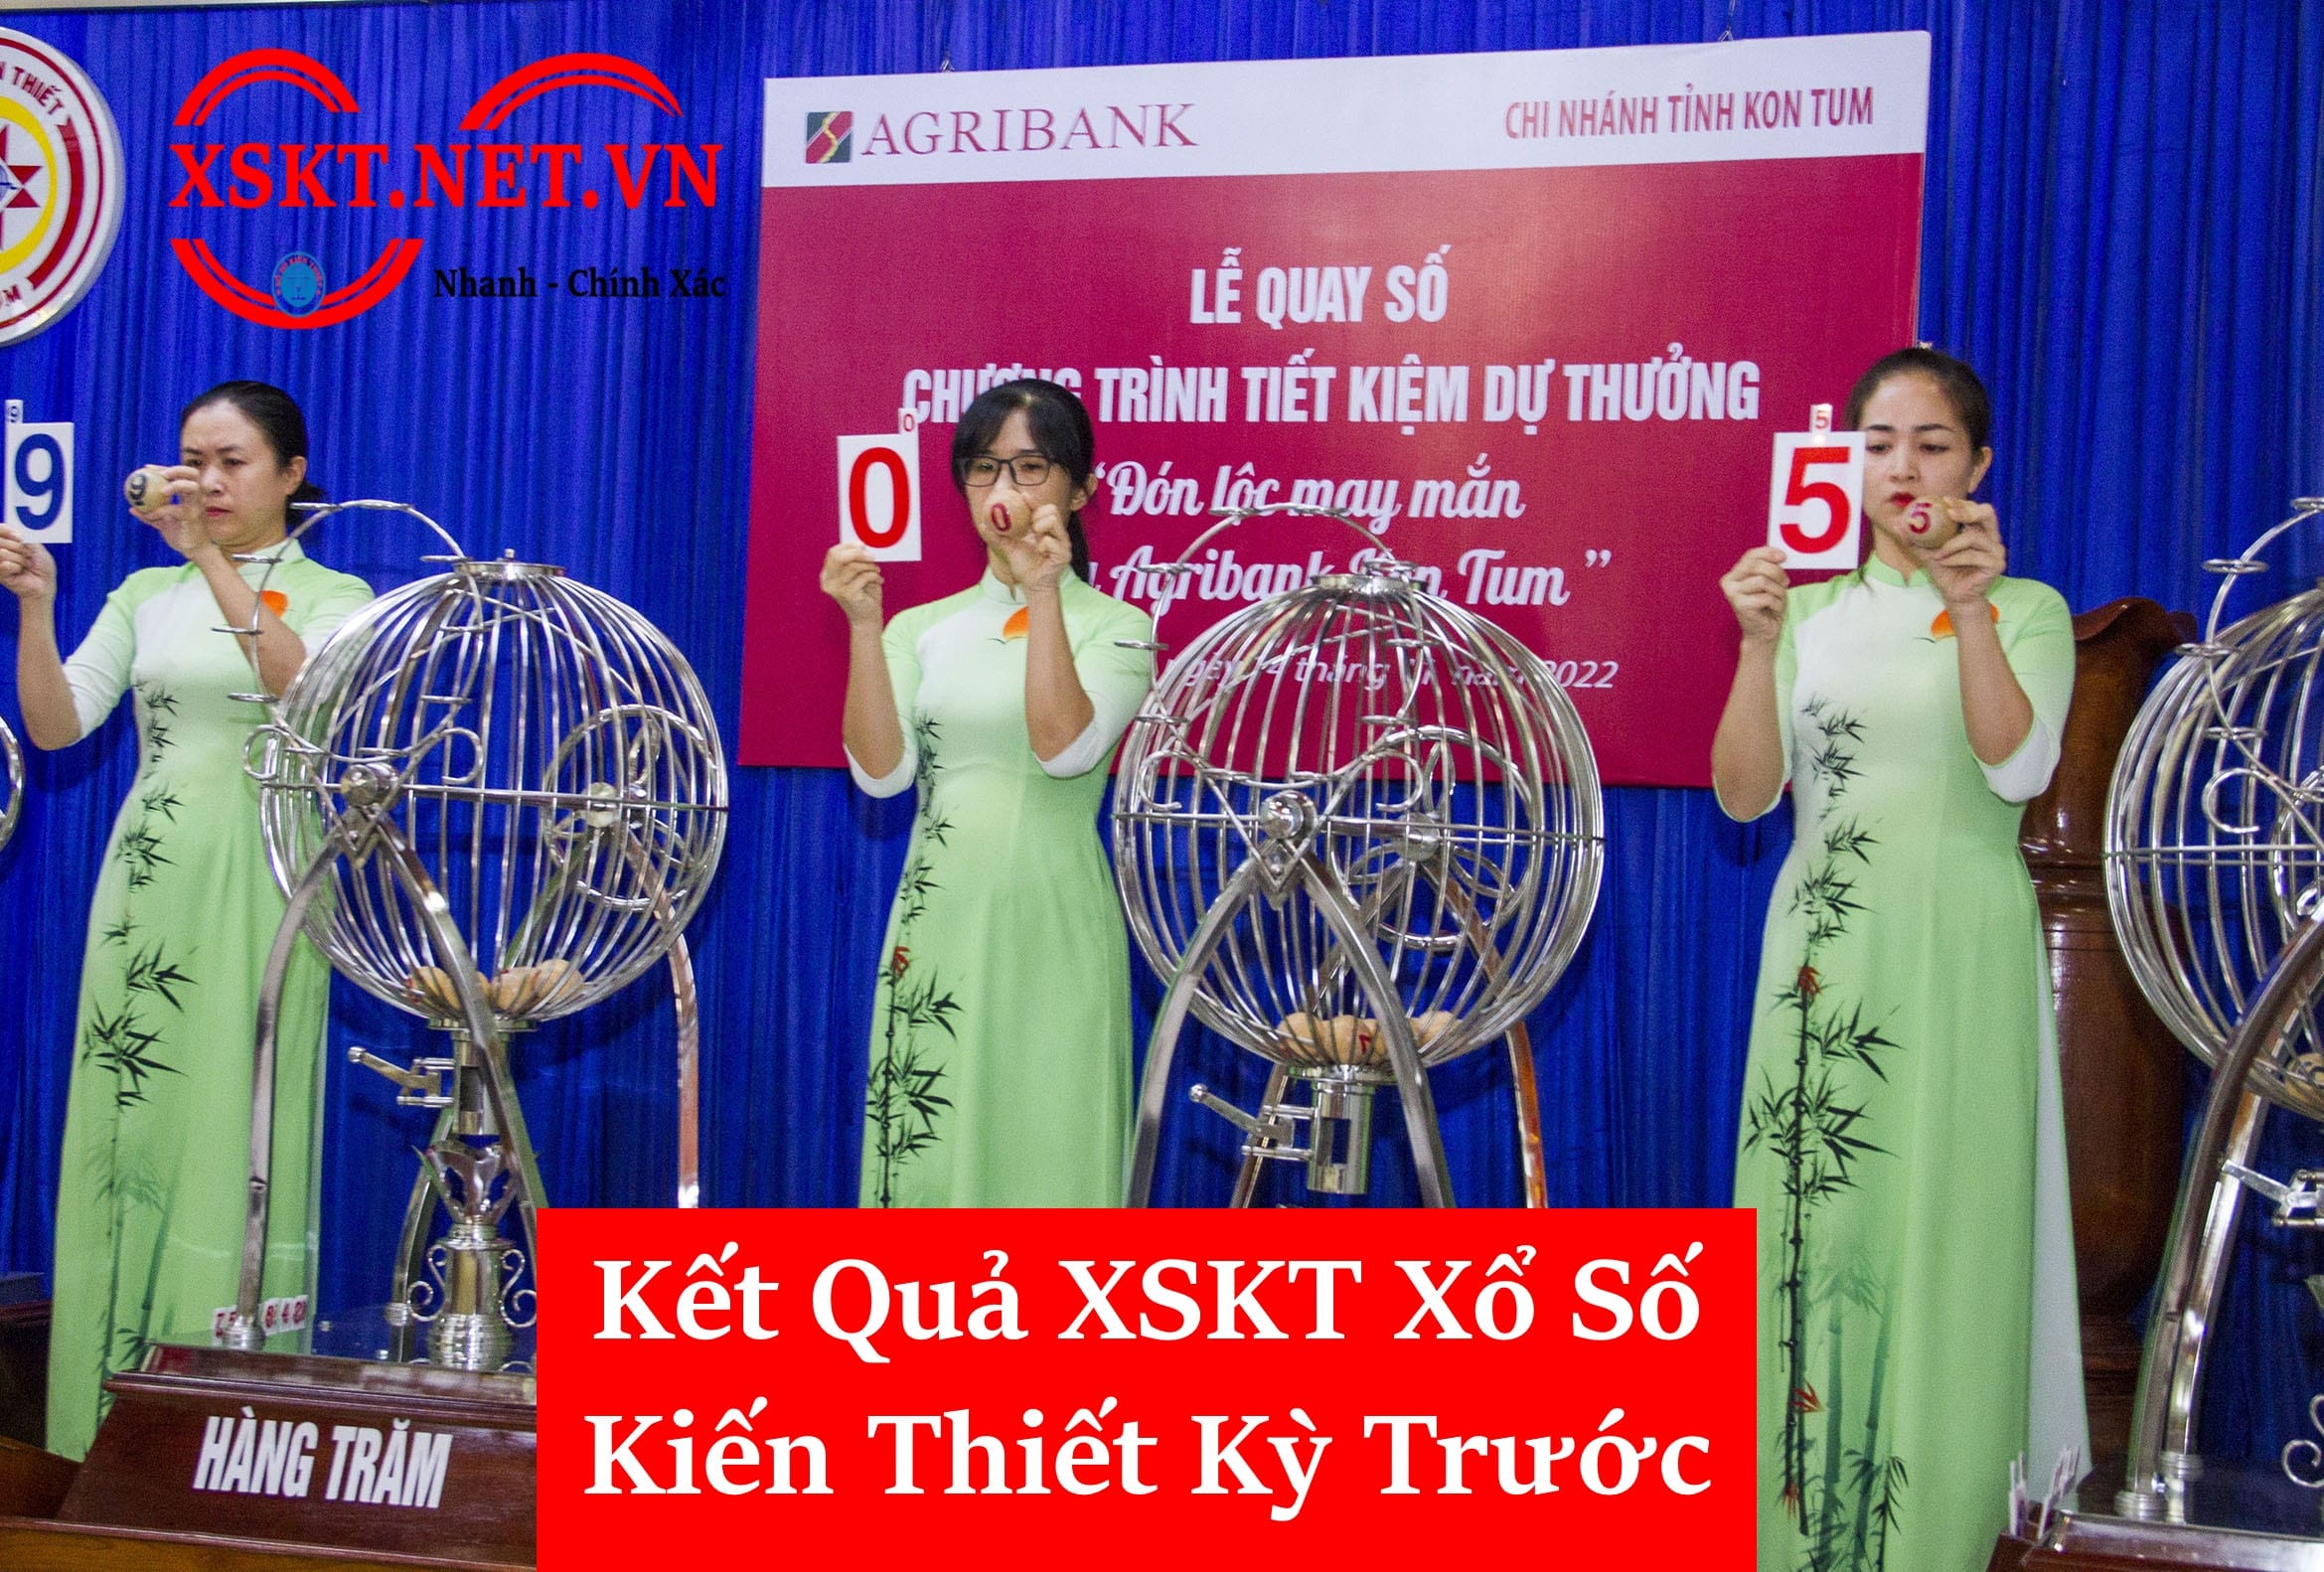 Dò Kết quả XSKT kỳ trước 3 miền thứ 2 ngày 12-06-2023 - XSKT.Net.Vn #1 Việt Nam